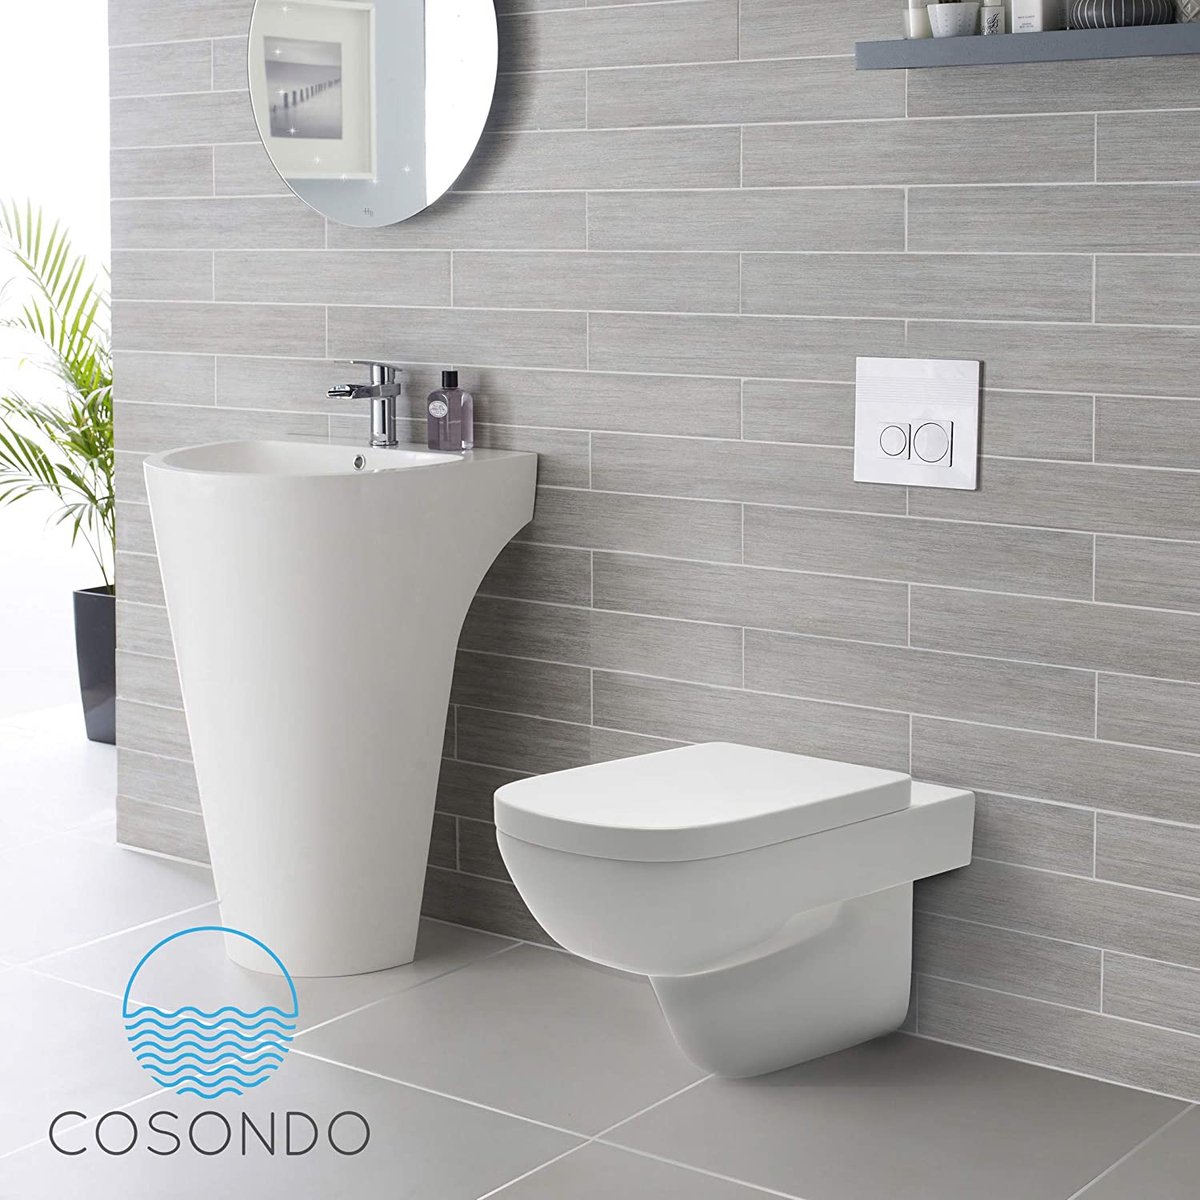 Abattant WC Cosondo Premium carré - abattant WC avec mécanisme de fermeture  amortie